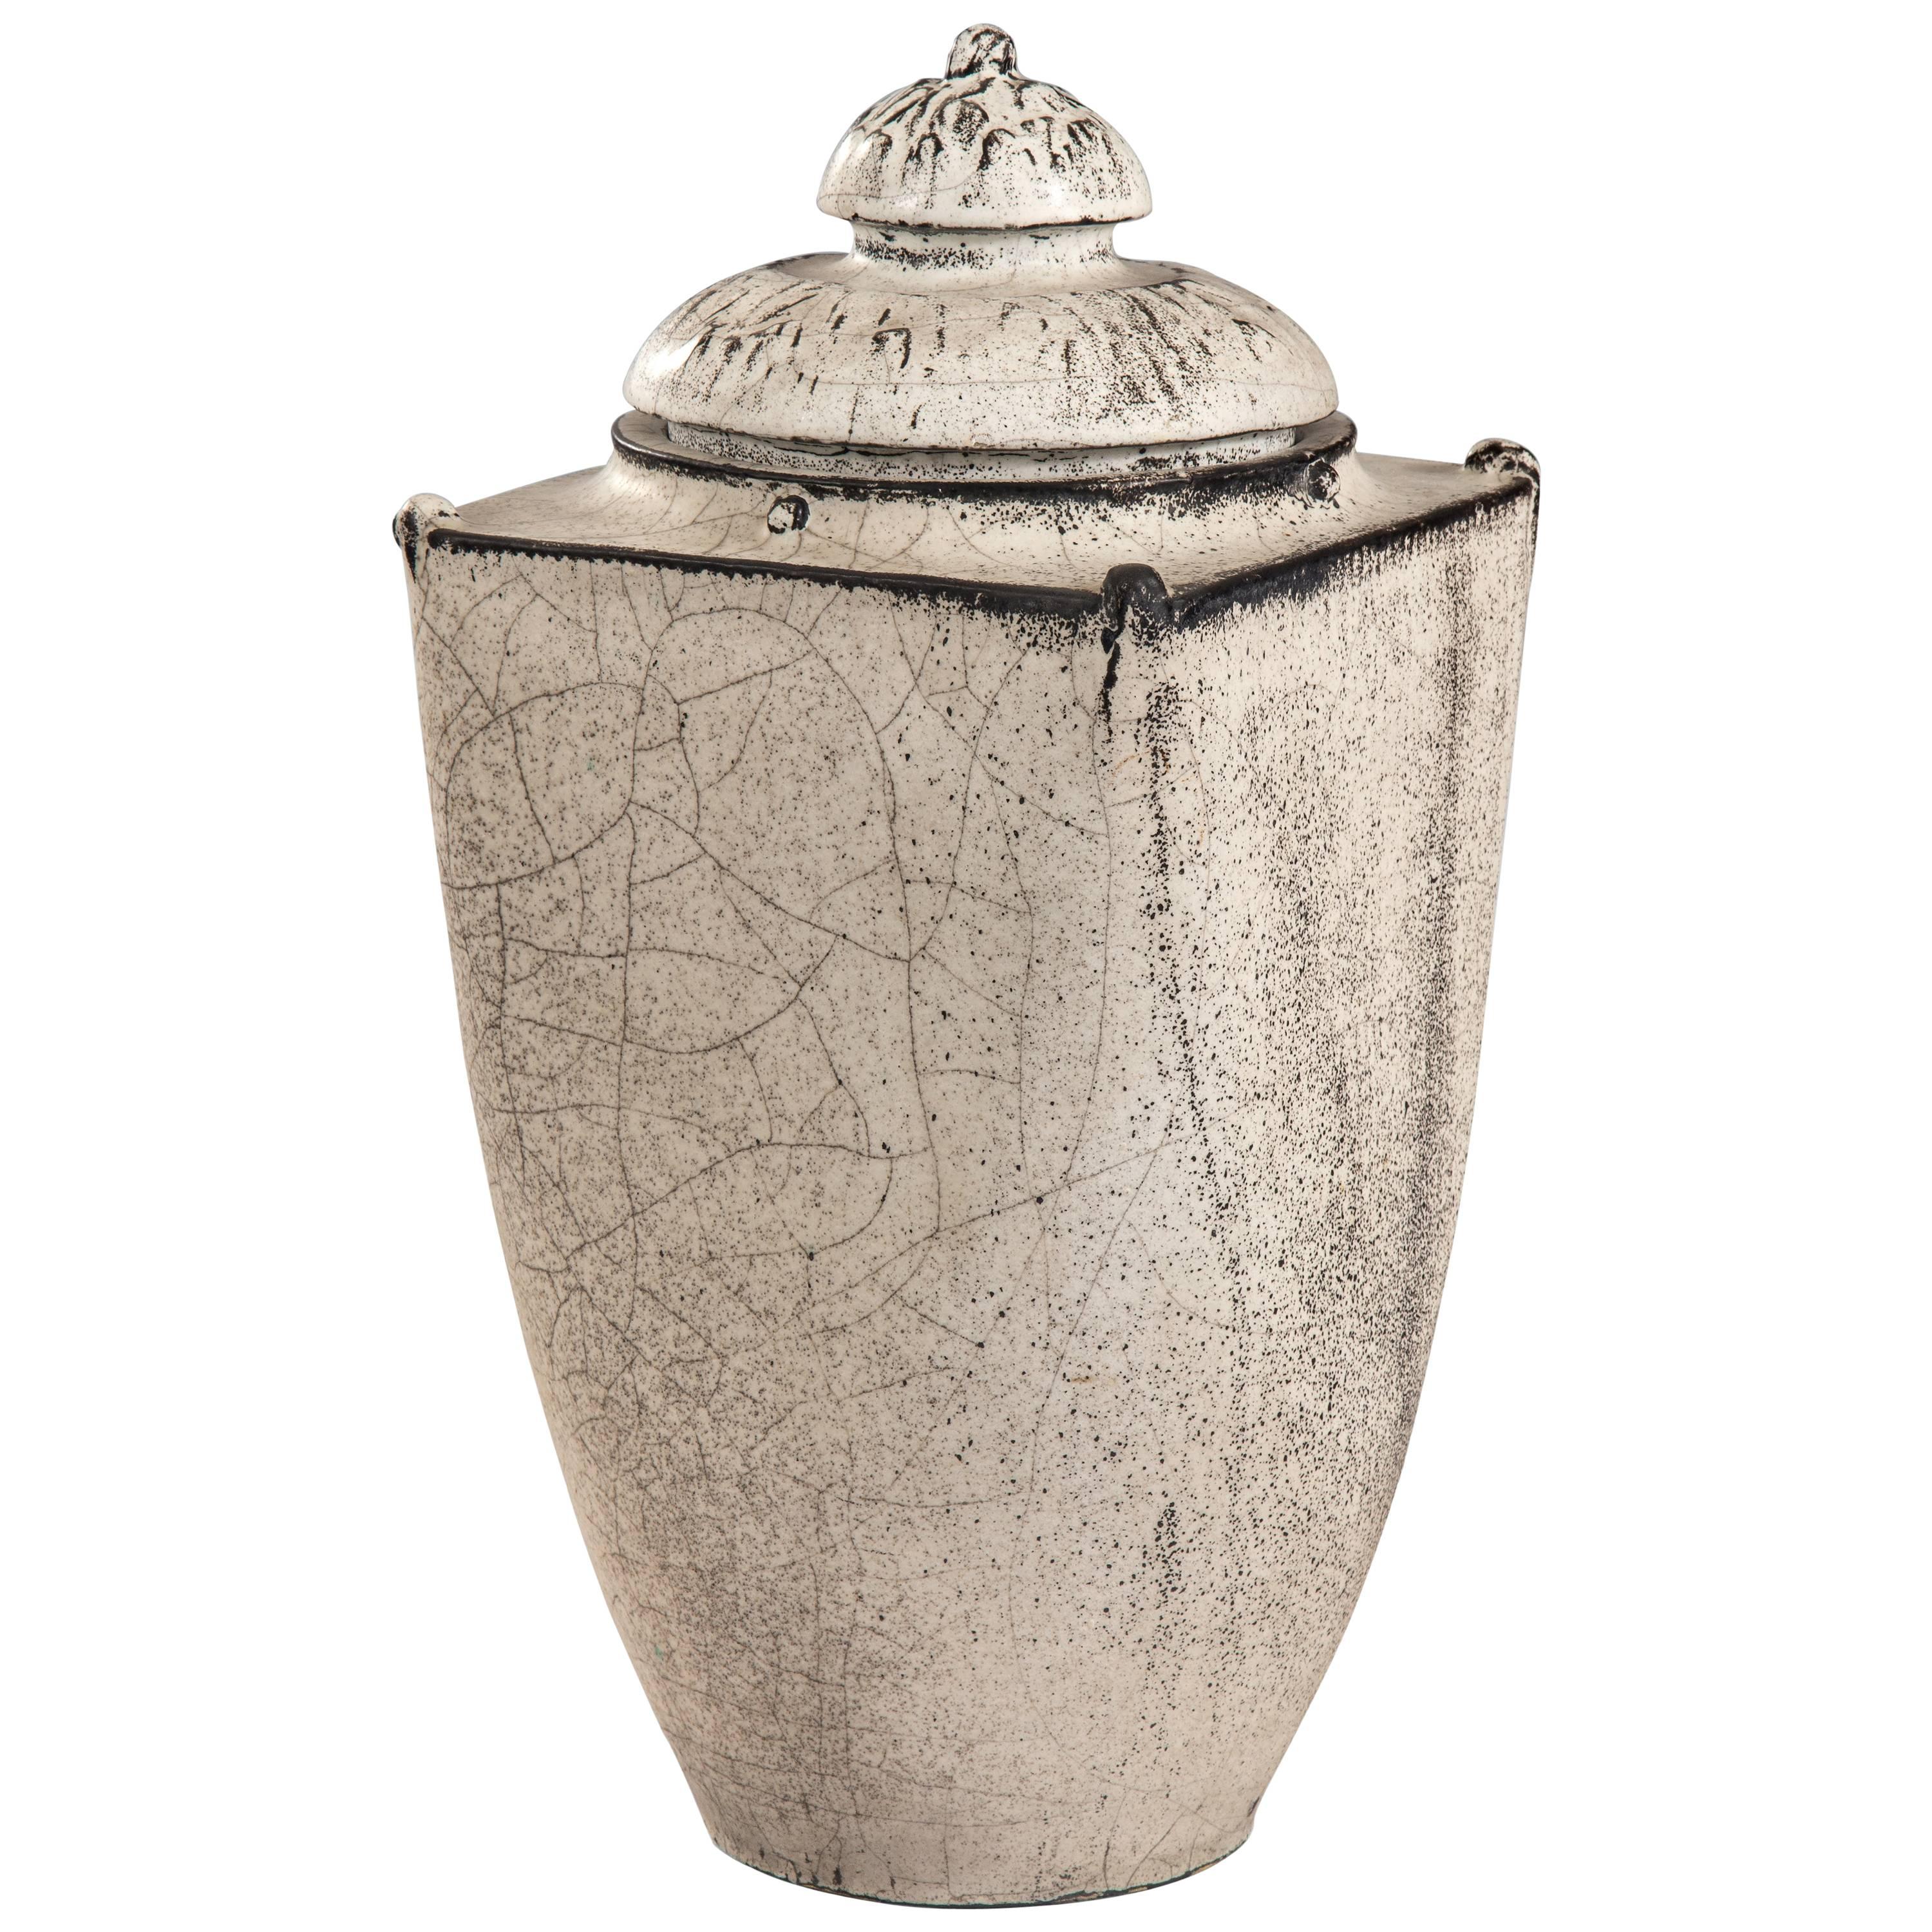 Svend Hammershøi for Kähler, Exceptional and Rare Large Lidded Ceramic Vase